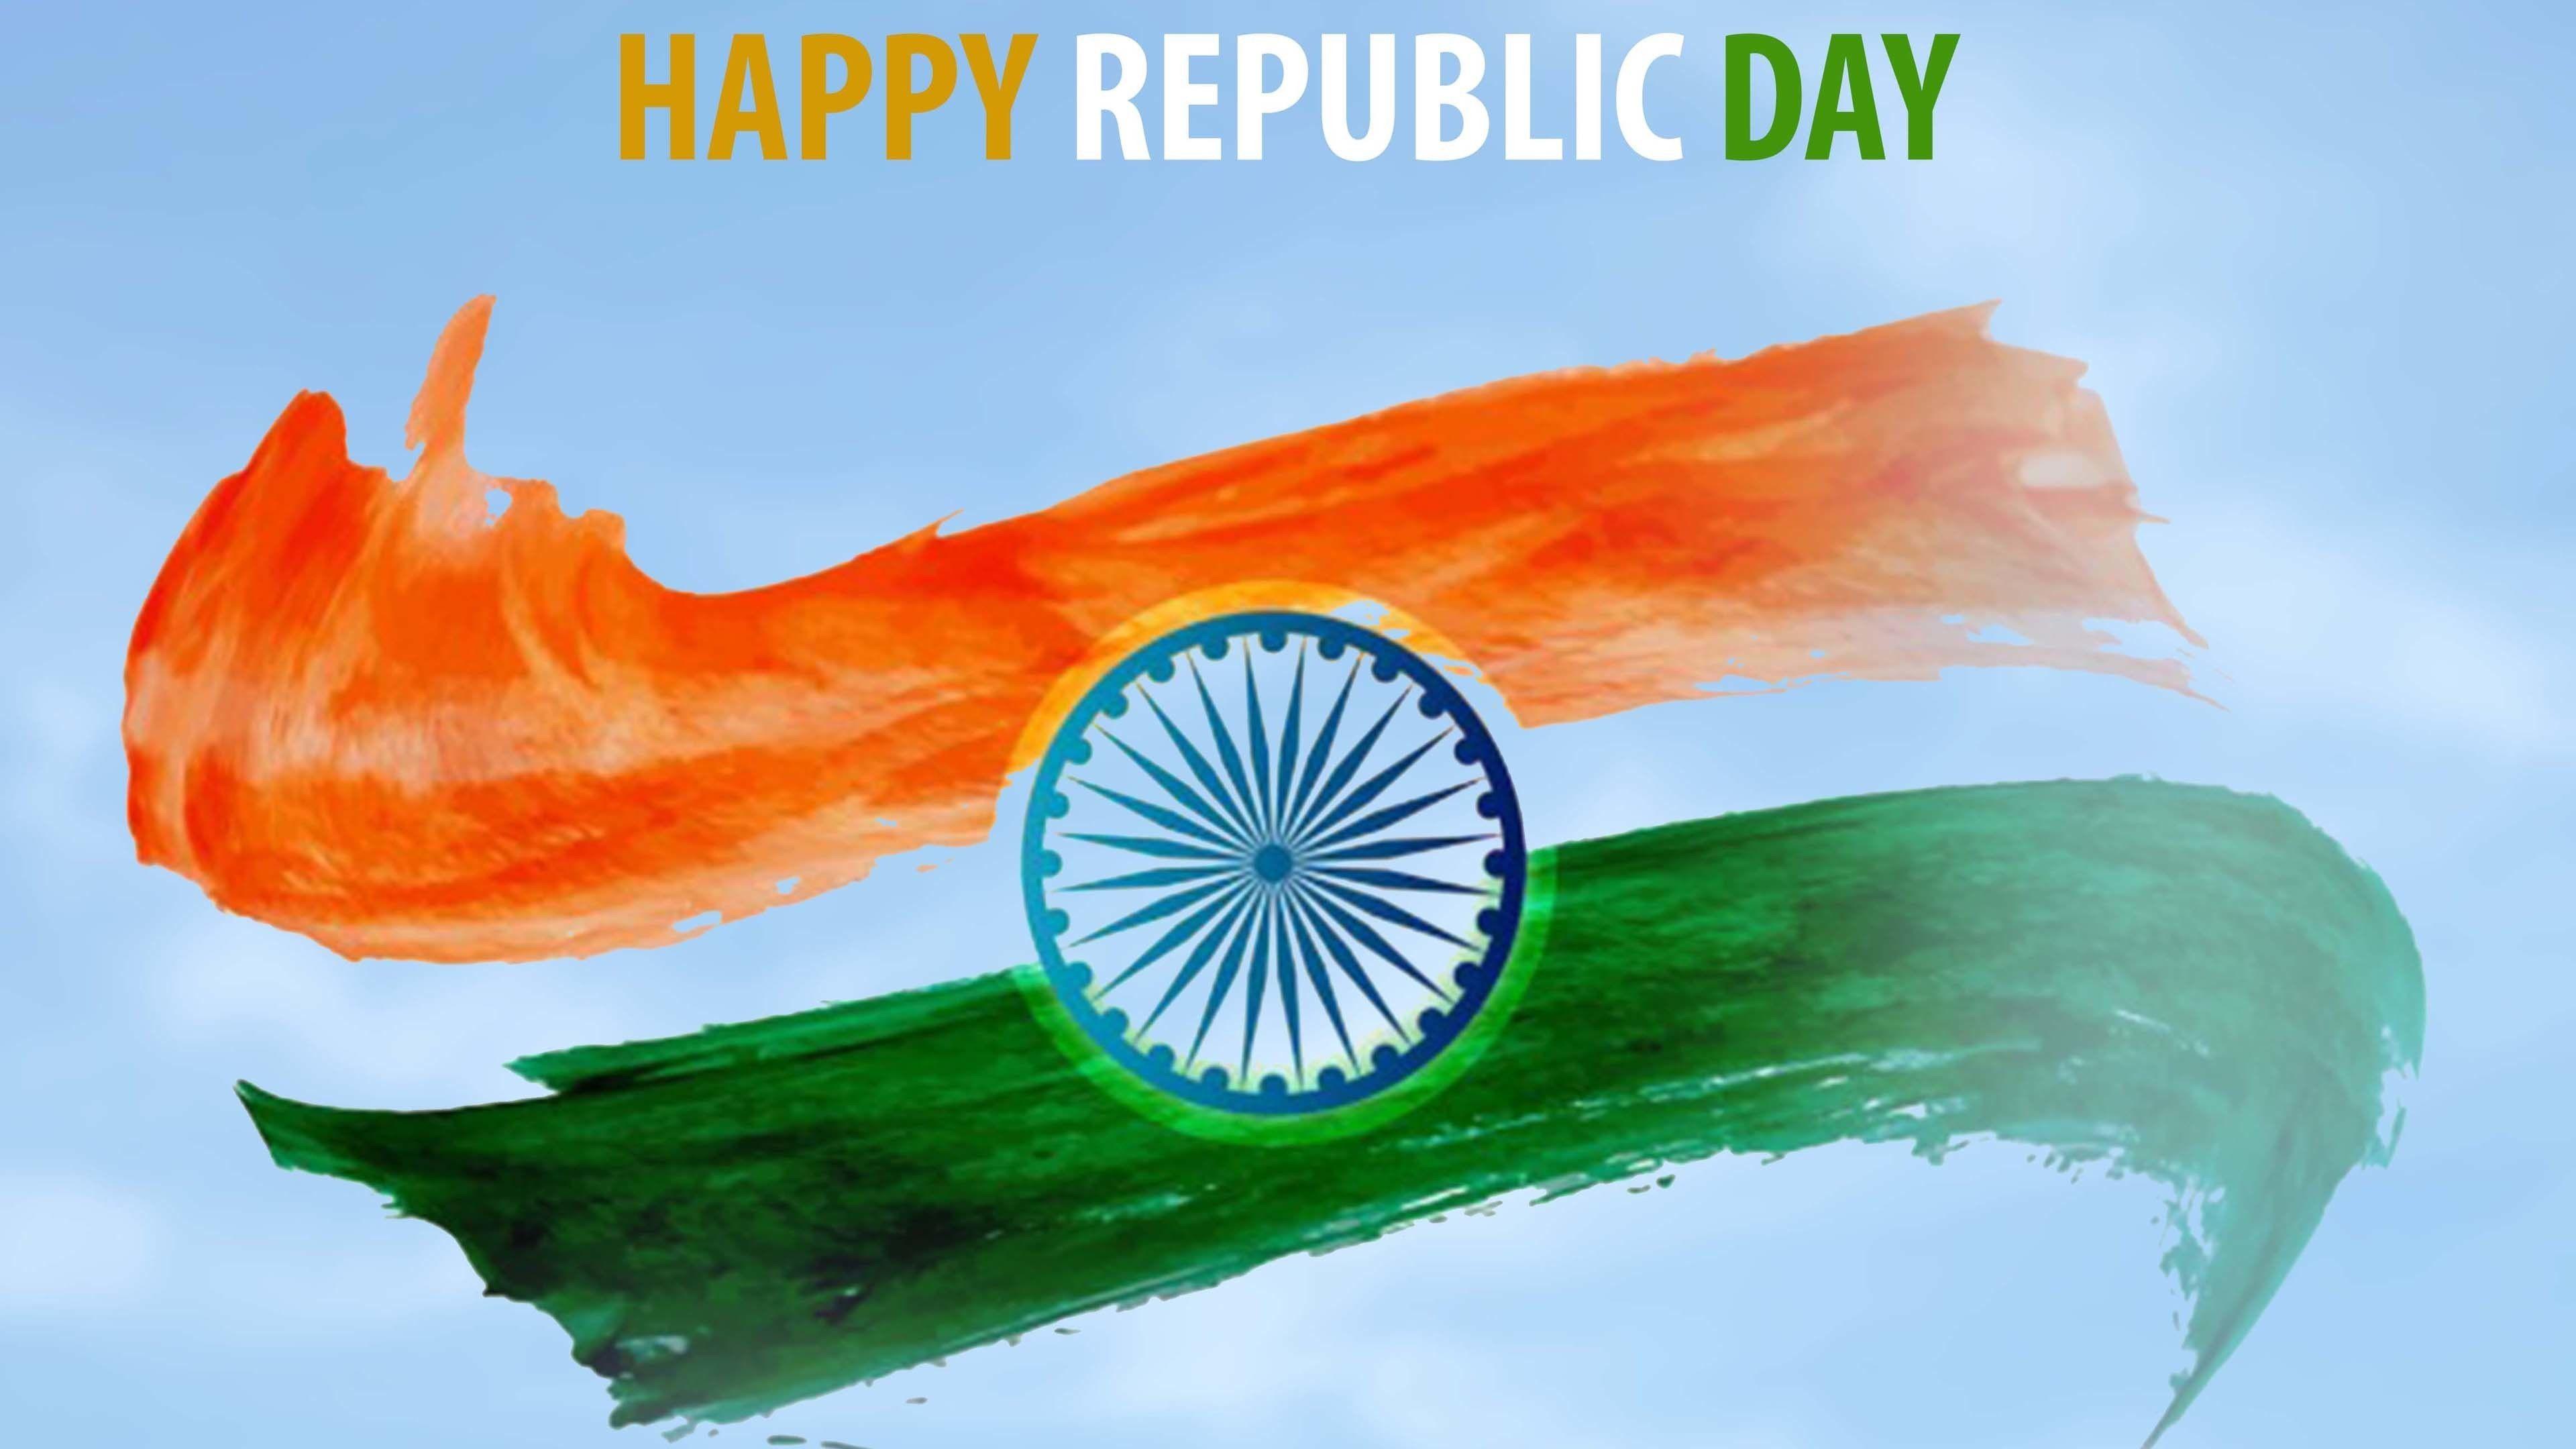 3840x2160 Cờ Ấn Độ với Hình nền 4k Ngày Cộng hòa Hạnh phúc - Hạnh phúc